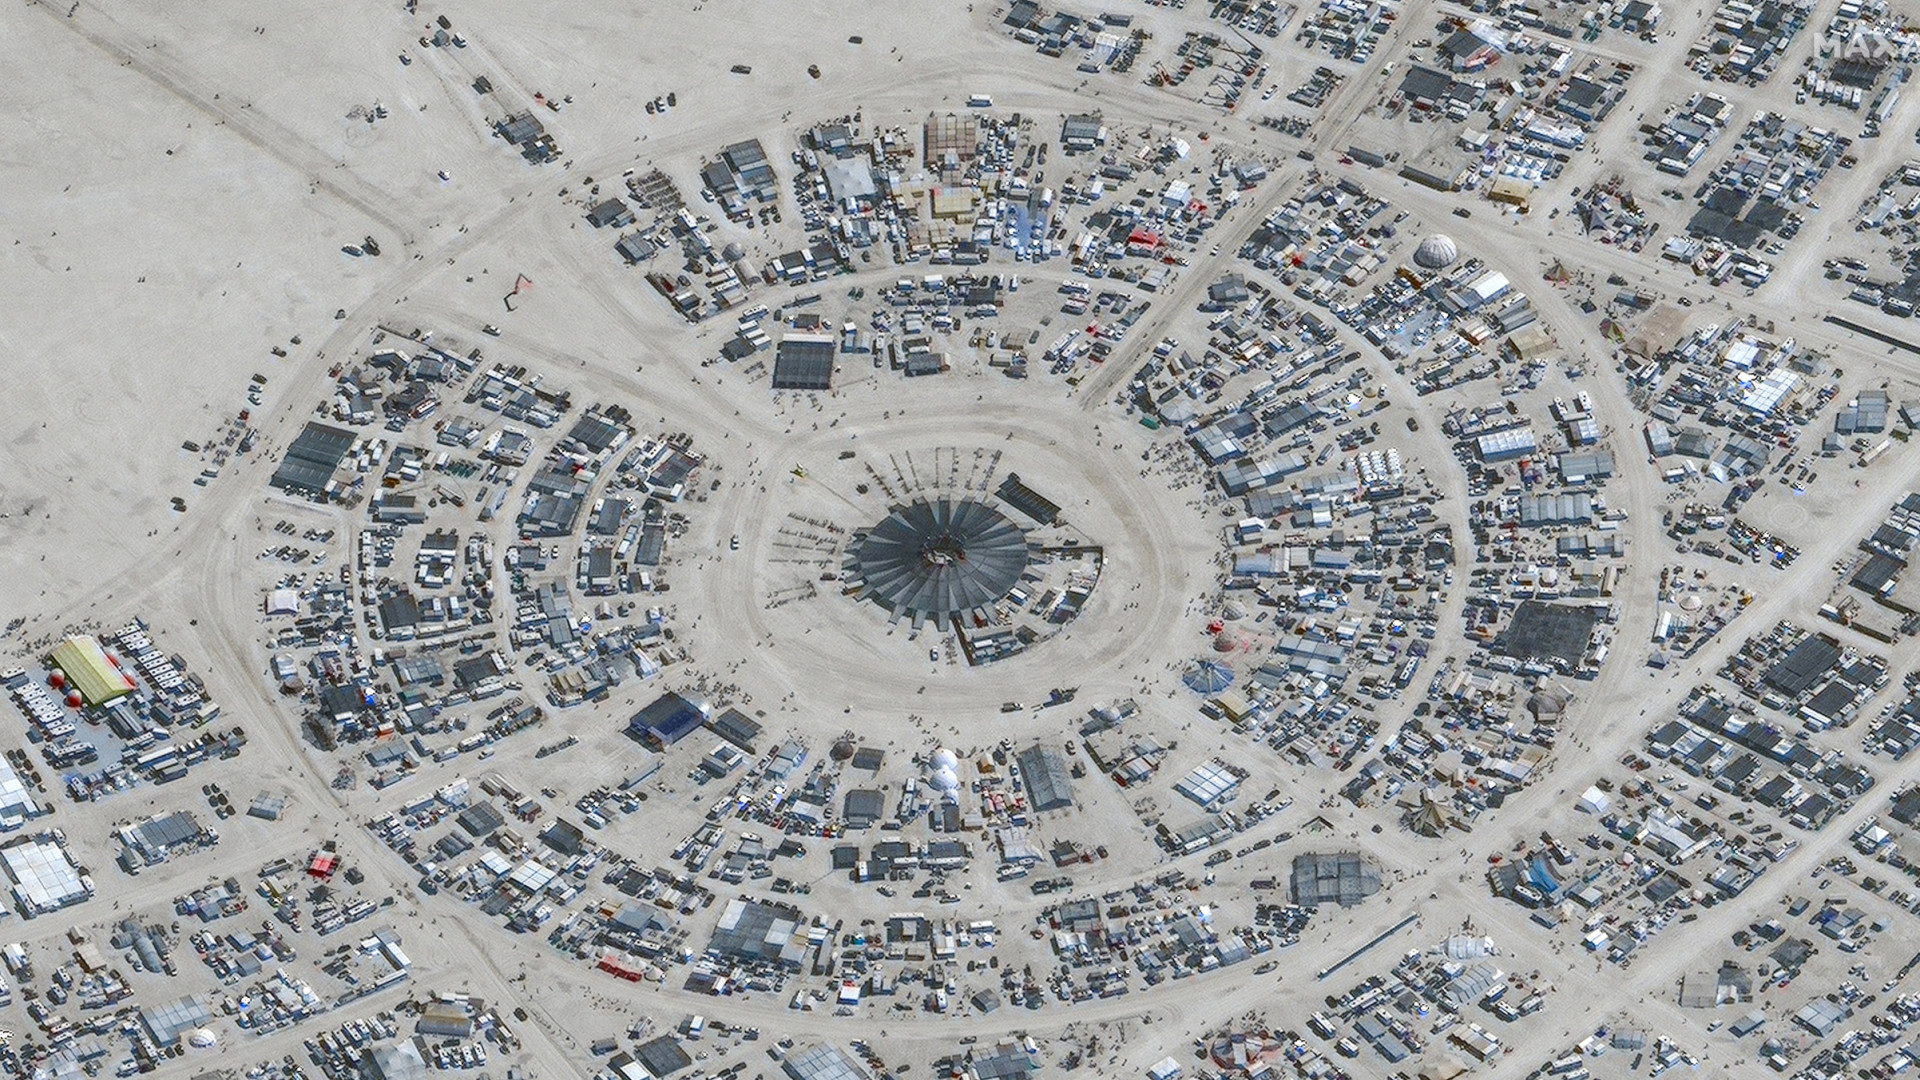 Festival: Um morto no festival americano Burning Man, milhares de festivaleiros ainda presos na lama